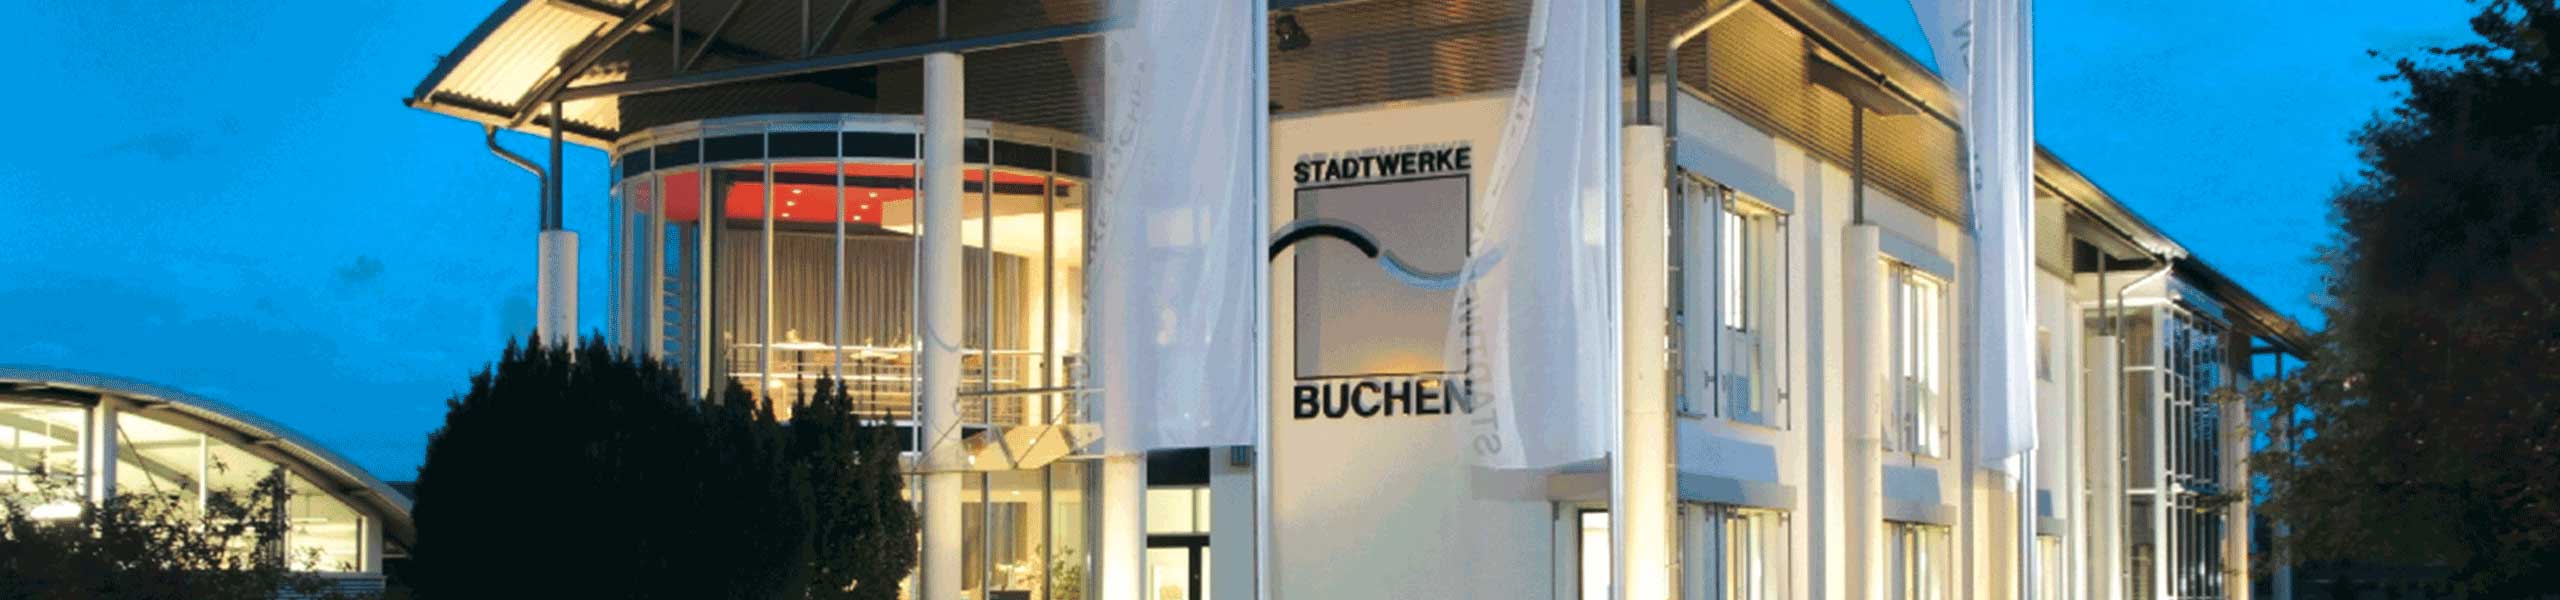 Stadtwerke Buchen GmbH & Co KG - Ihr Versorger vor Ort - swb.magazin 4/2021